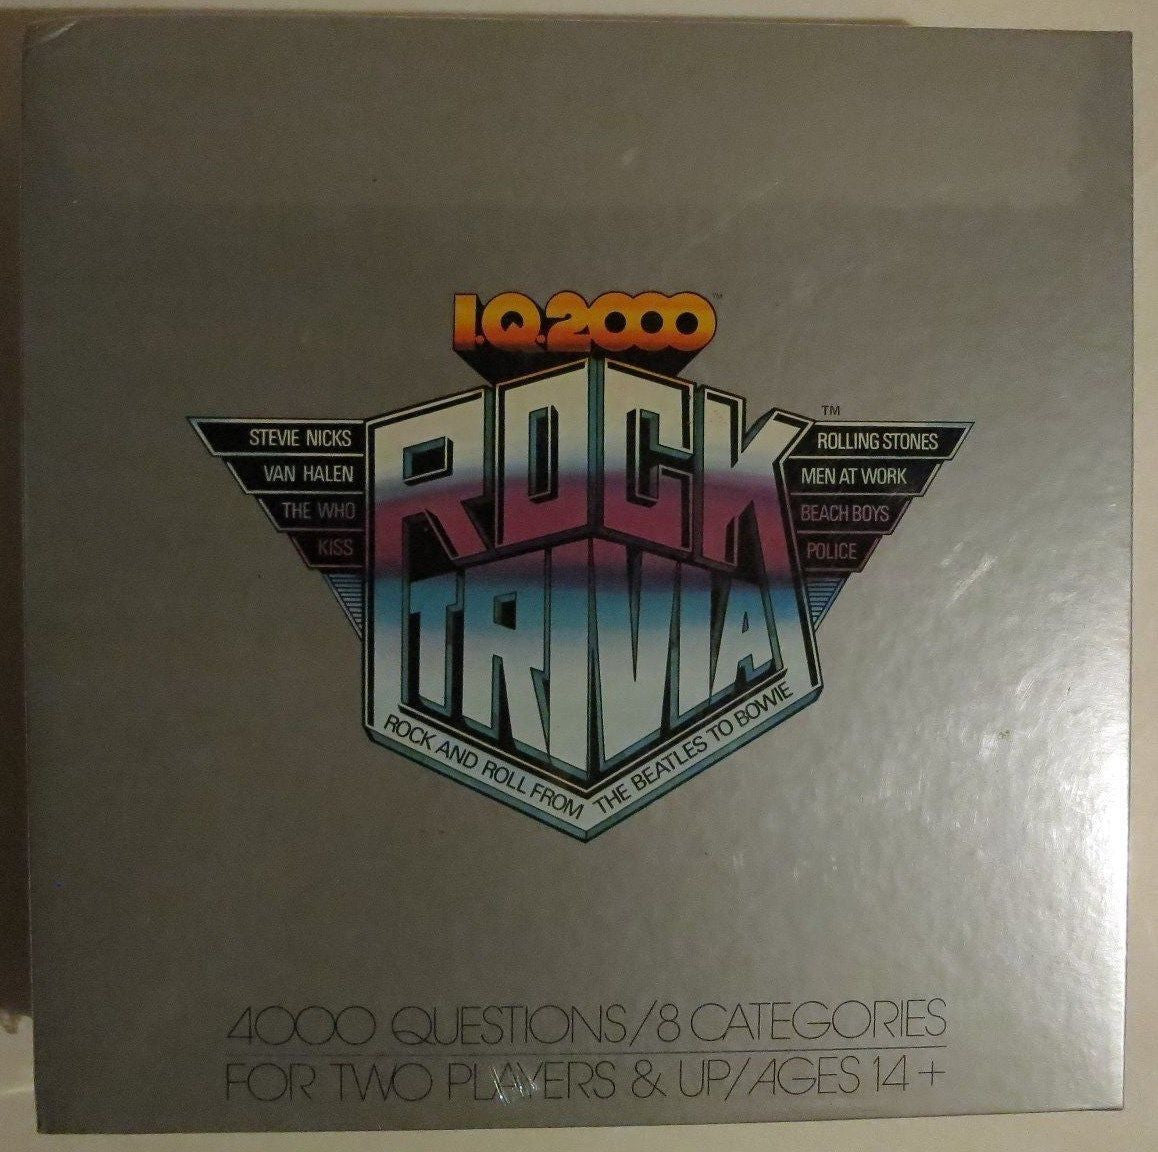 I.Q. 2000 Rock Trivia Board Game New Sealed 1984 Vintage